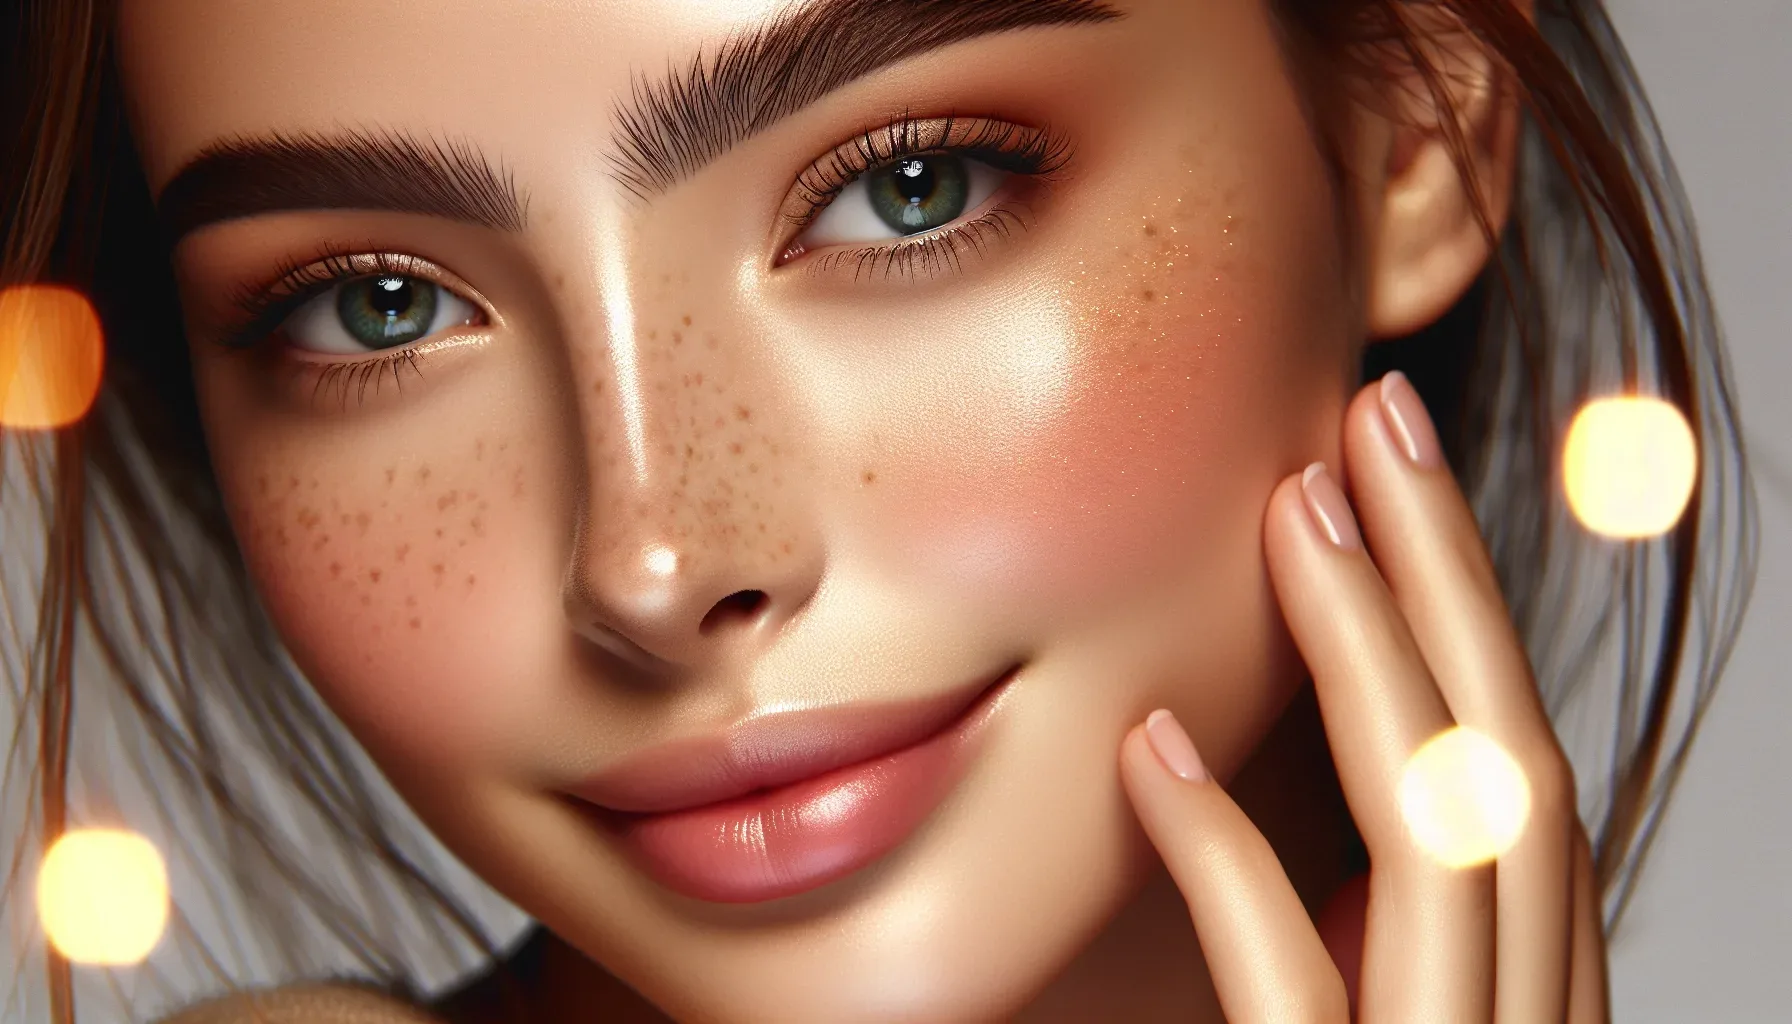 elimina tus marcas de acne guia completa para una piel sin imperfecciones.webp